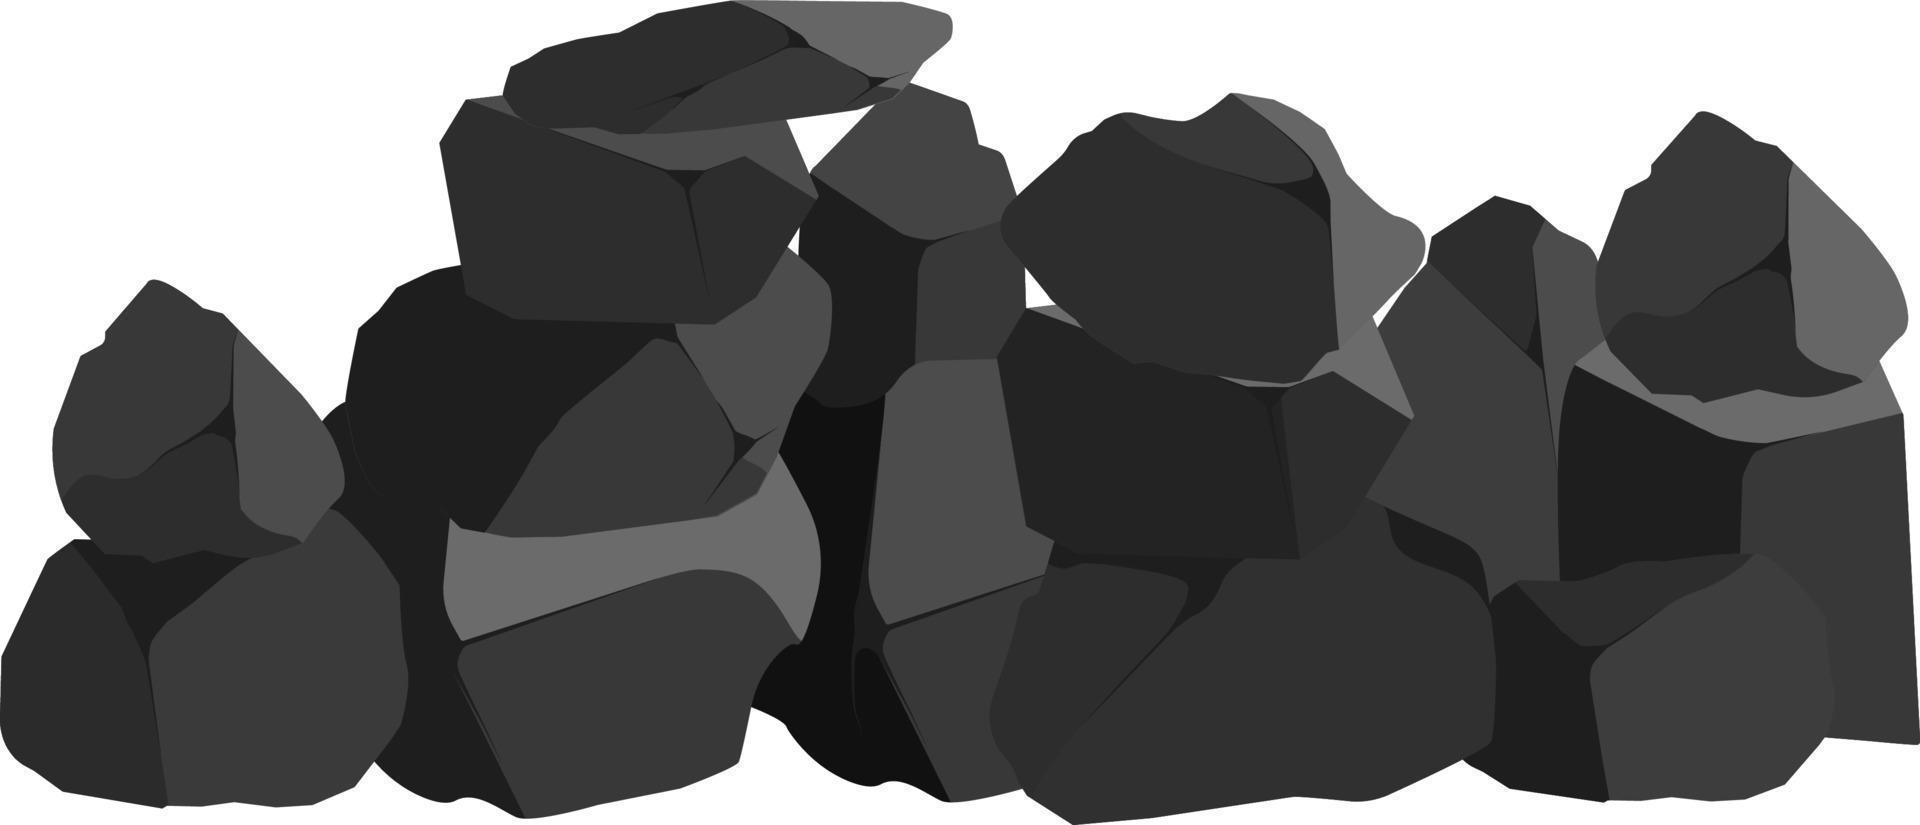 ein satz aus schwarzer kohle in verschiedenen formen. sammlung von stücken aus kohle, graphit, basalt und anthrazit. das konzept des bergbaus und erzes in einer mine.rock-fragmente, felsbrocken und baumaterial. vektor